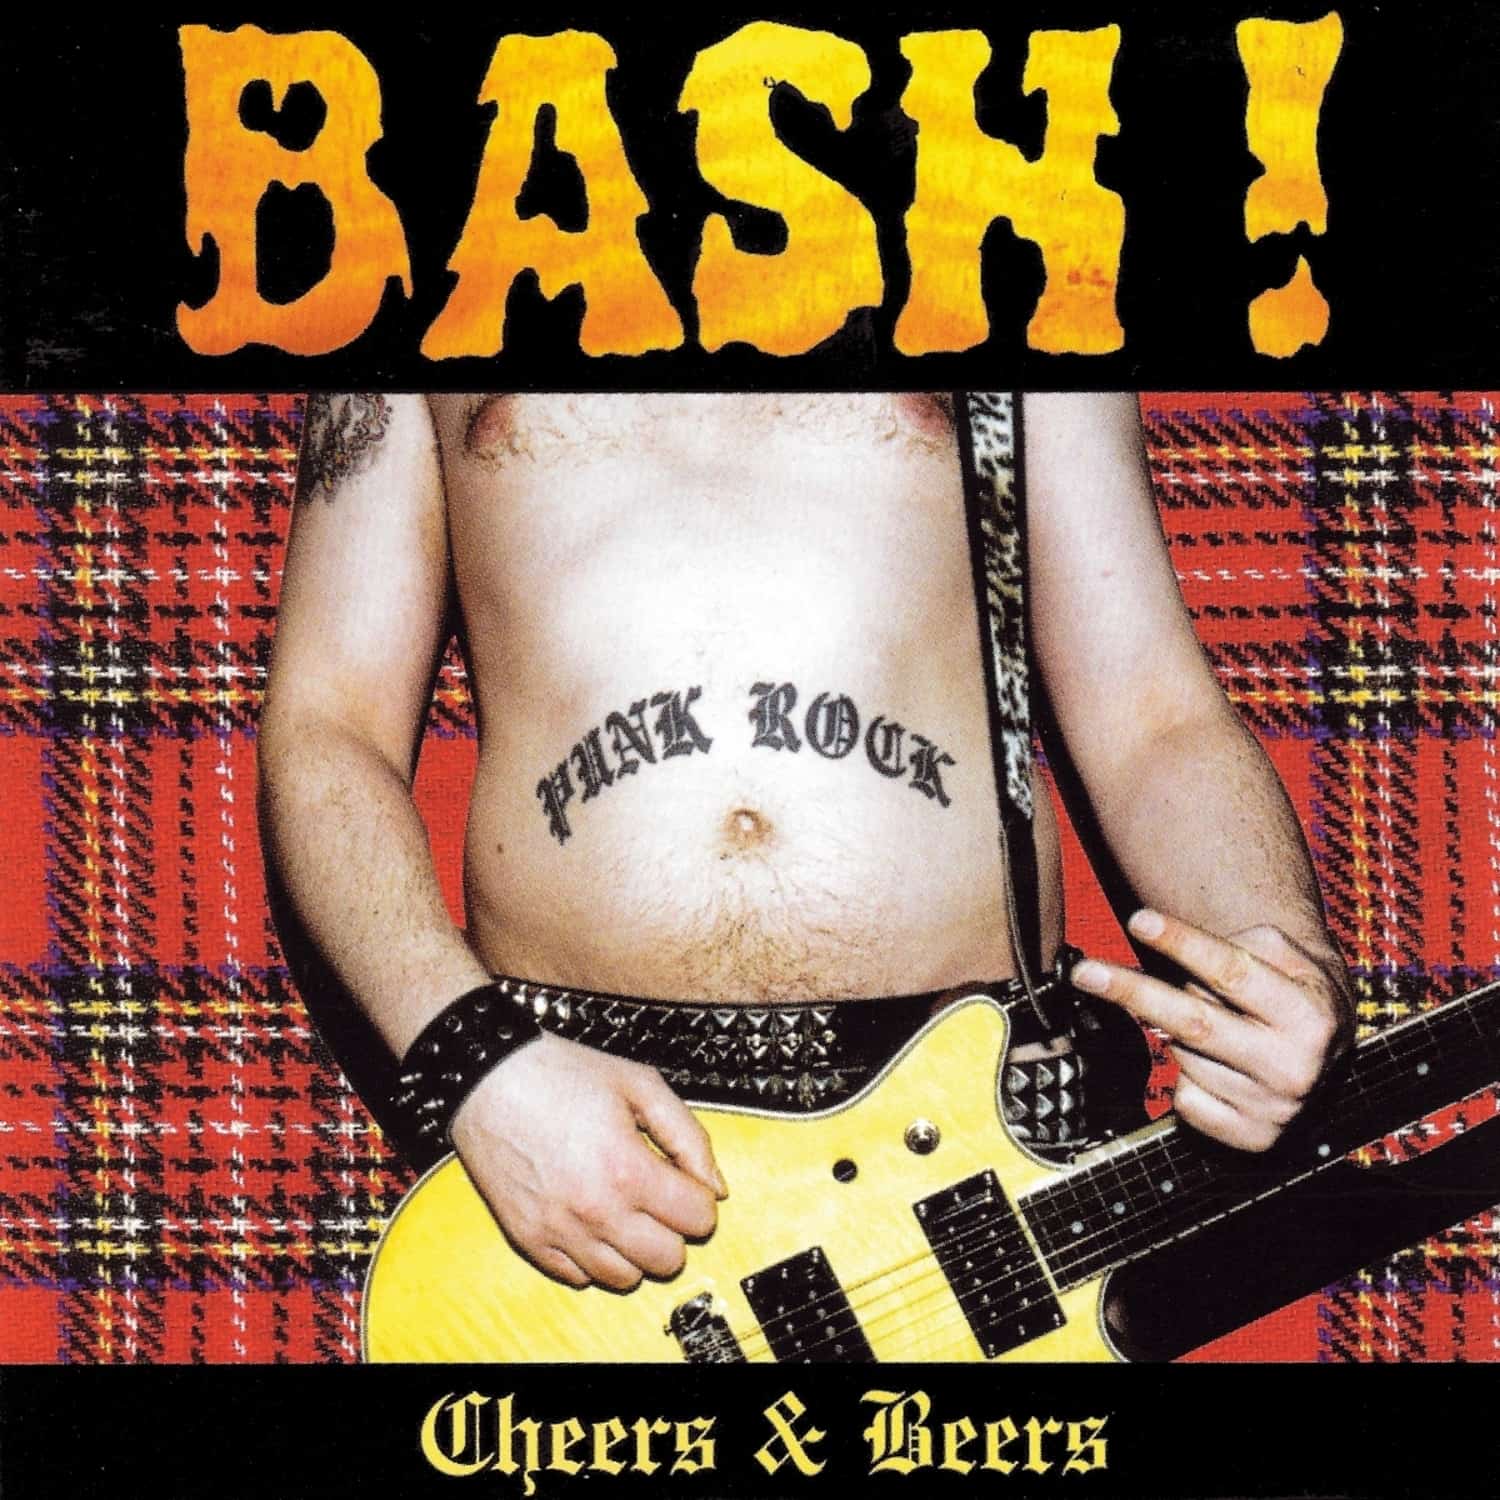 Bash! - CHEERS & BEERS 